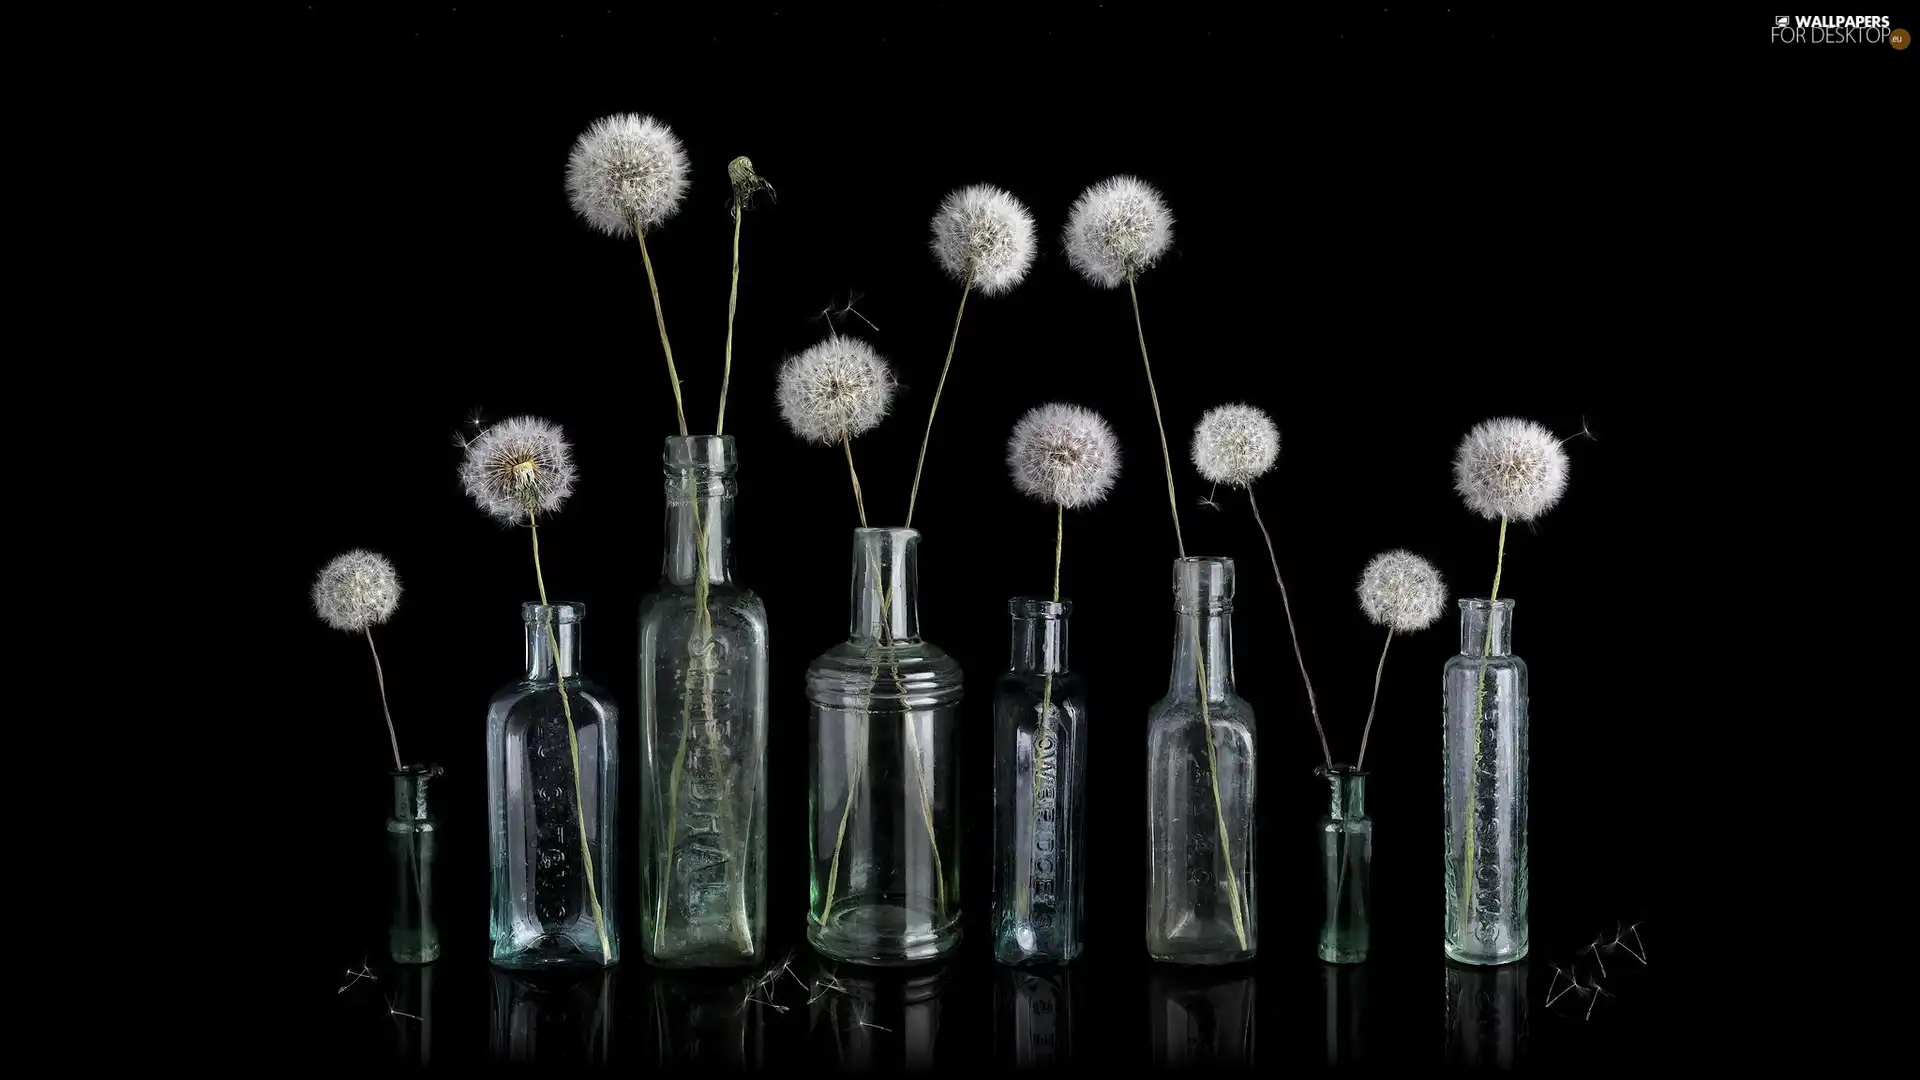 Flowers, Common Dandelion, Bottles, dandelions